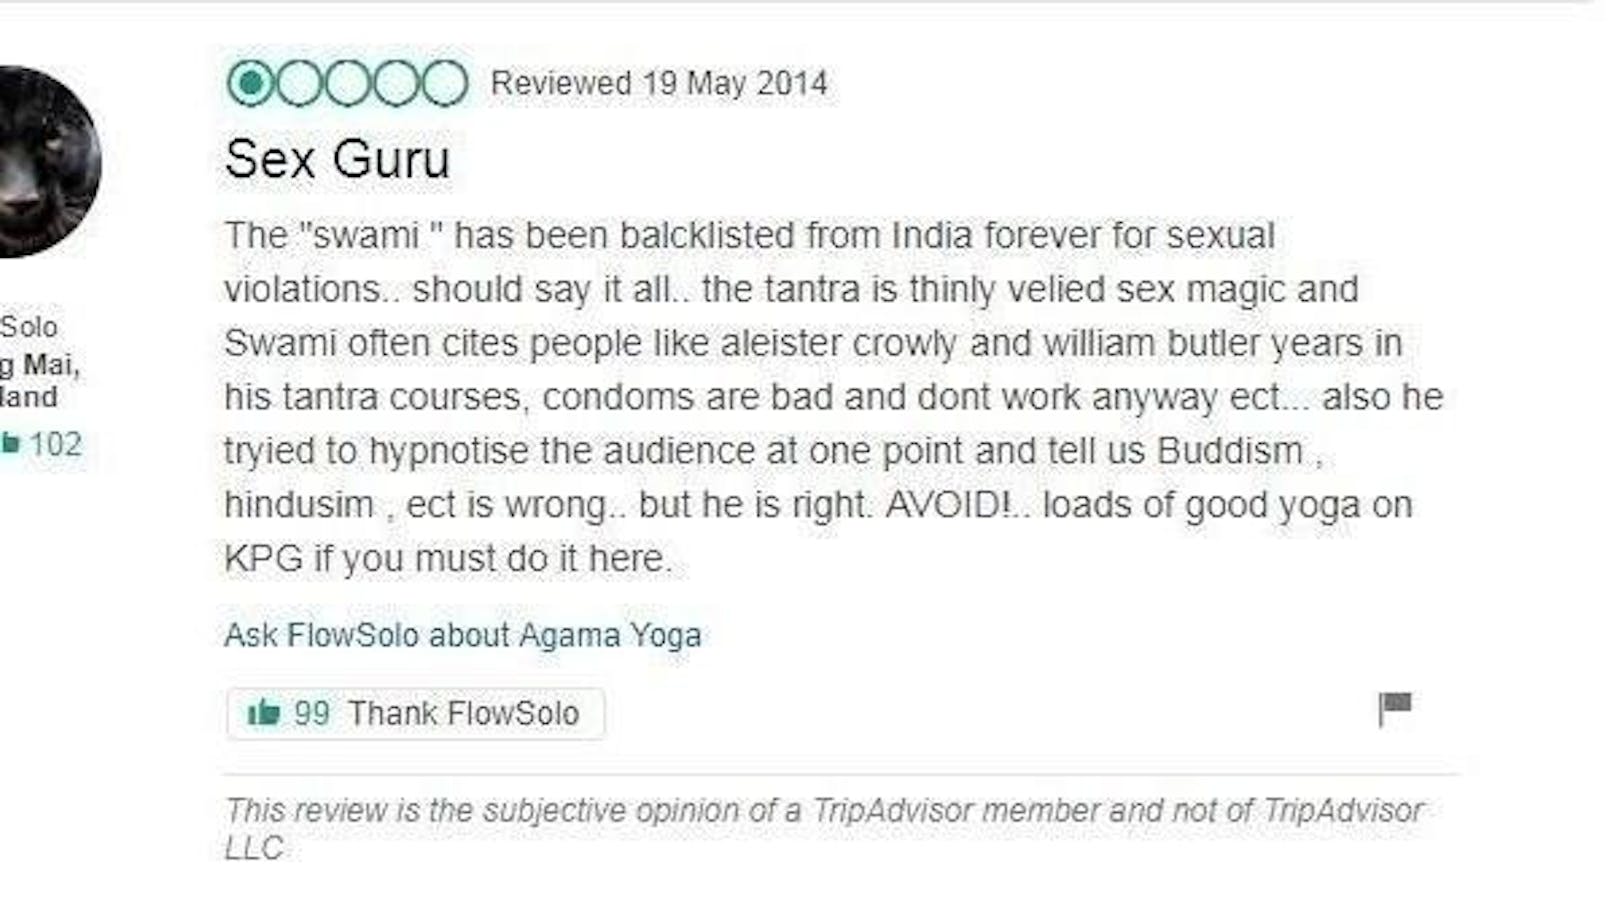 Eine Bewertung einer Userin zur Schule des beschuldigten Gurus Swami. Die Frau warnt vor dem Guru.